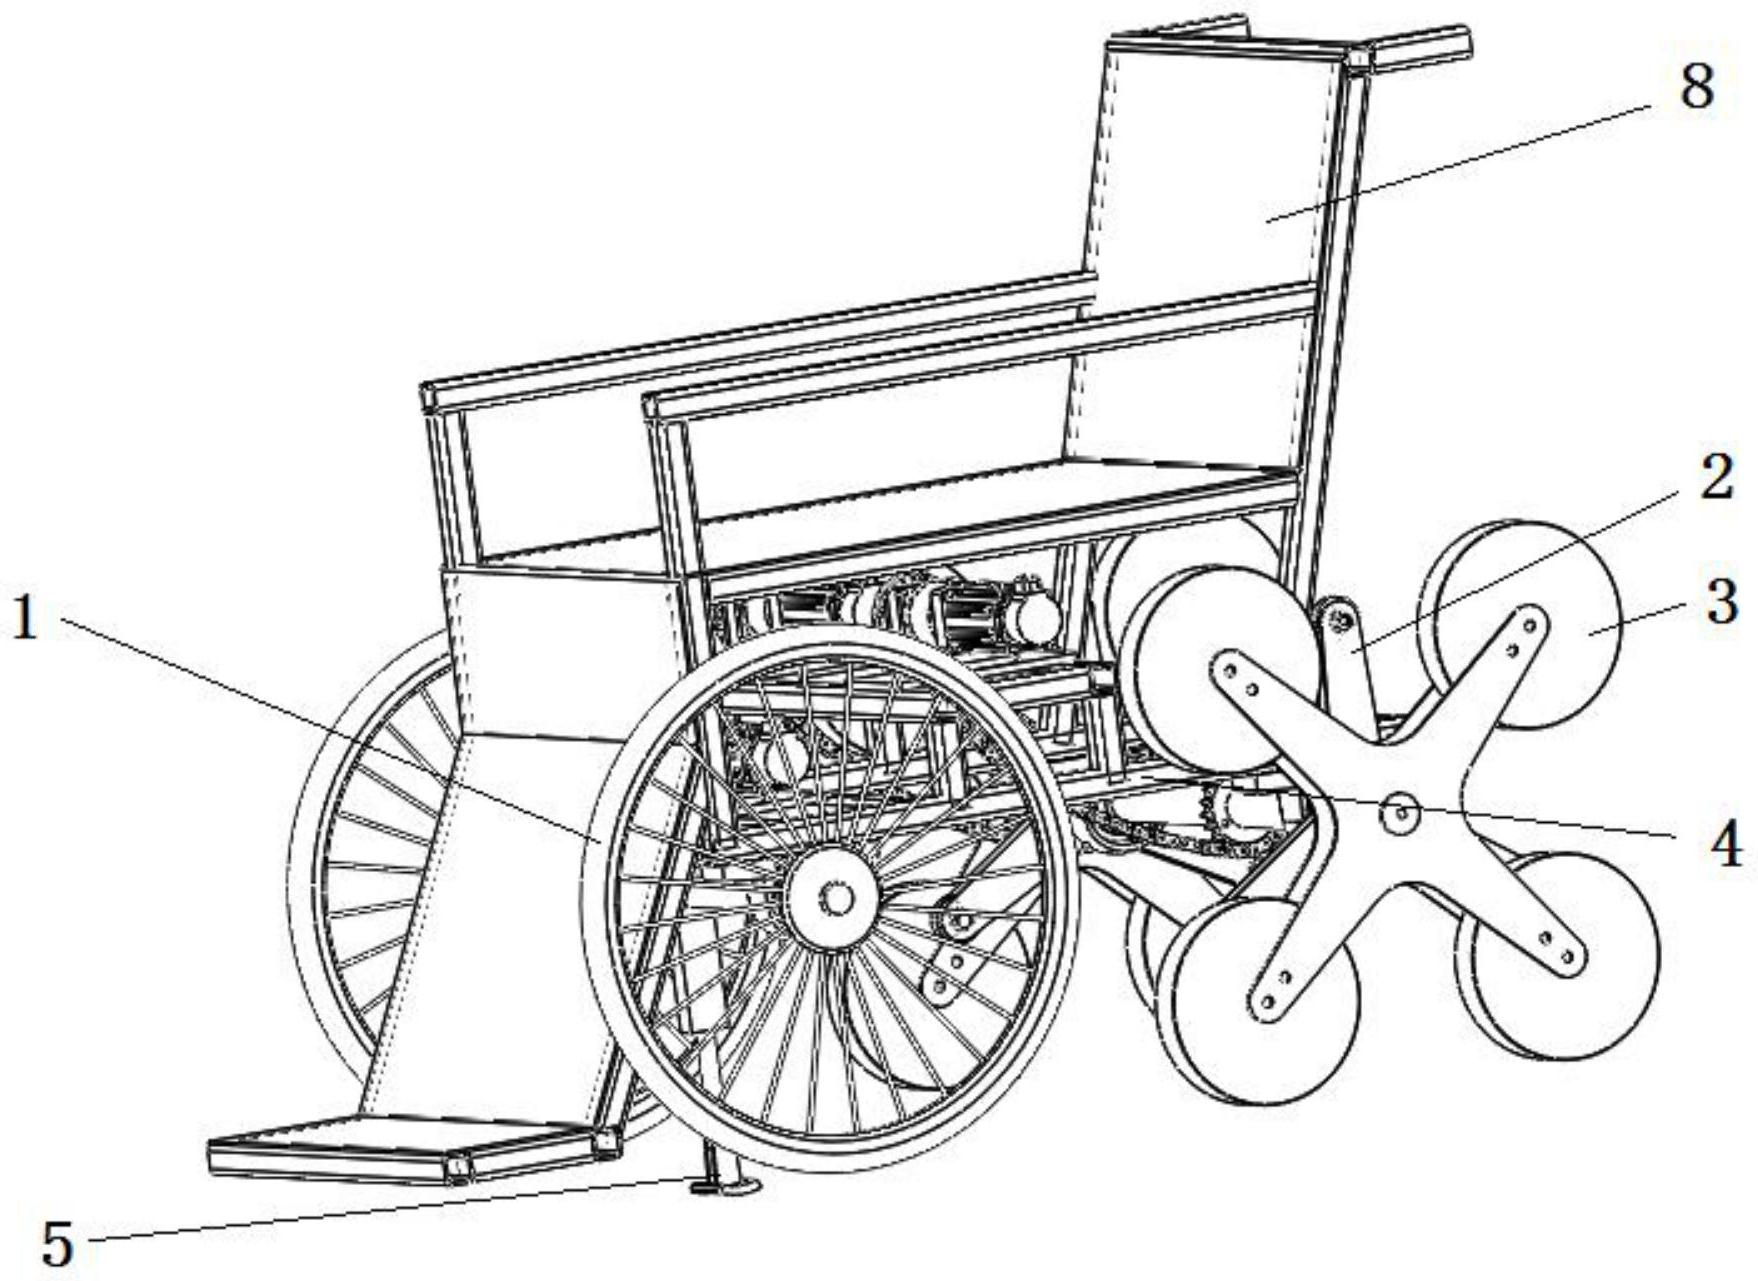 cn112842723a_爬楼方法及爬楼轮组及带有该轮组的爬楼轮椅有效